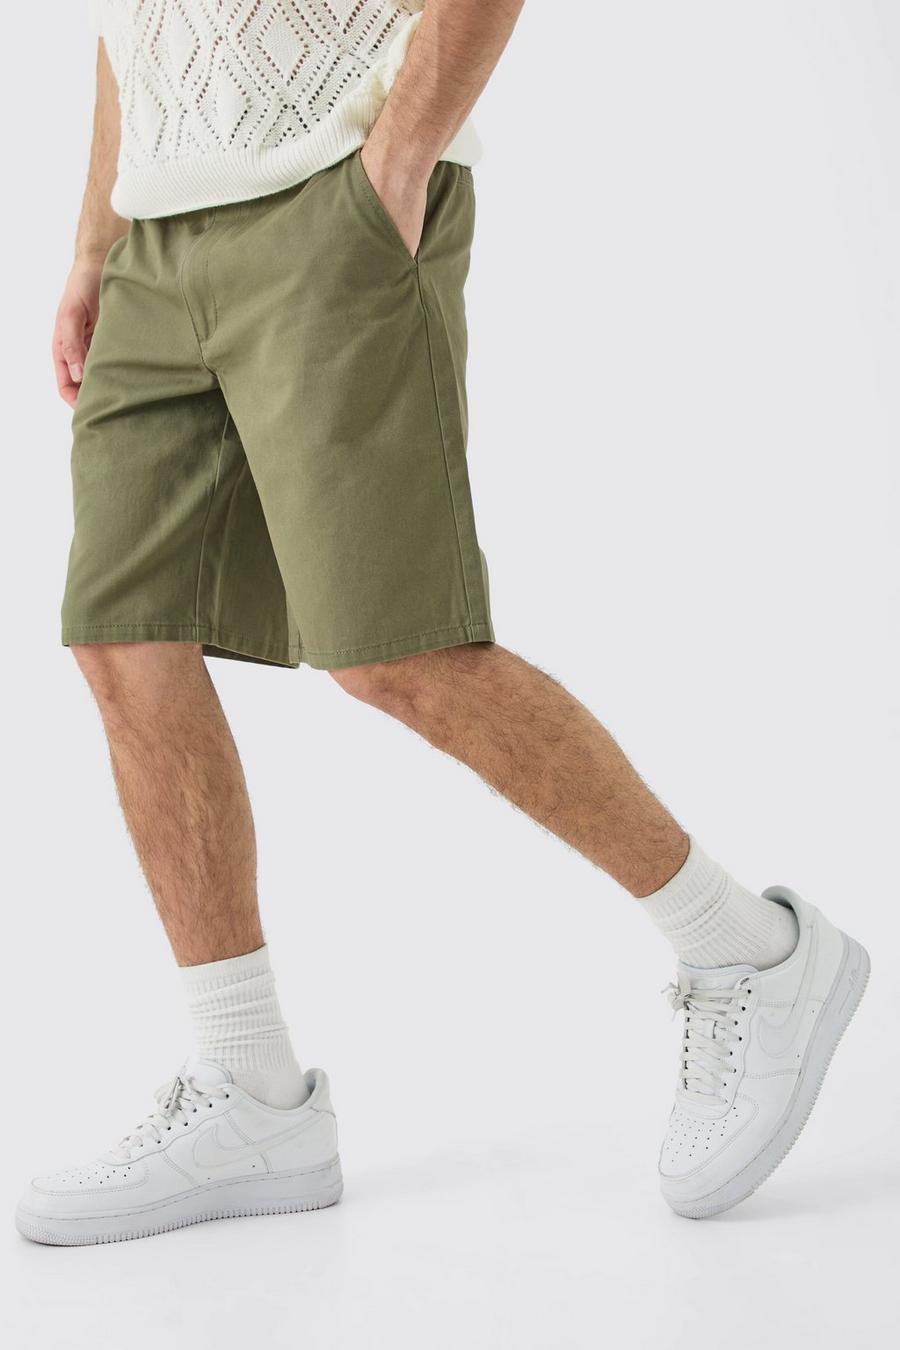 Lockere Khaki-Shorts